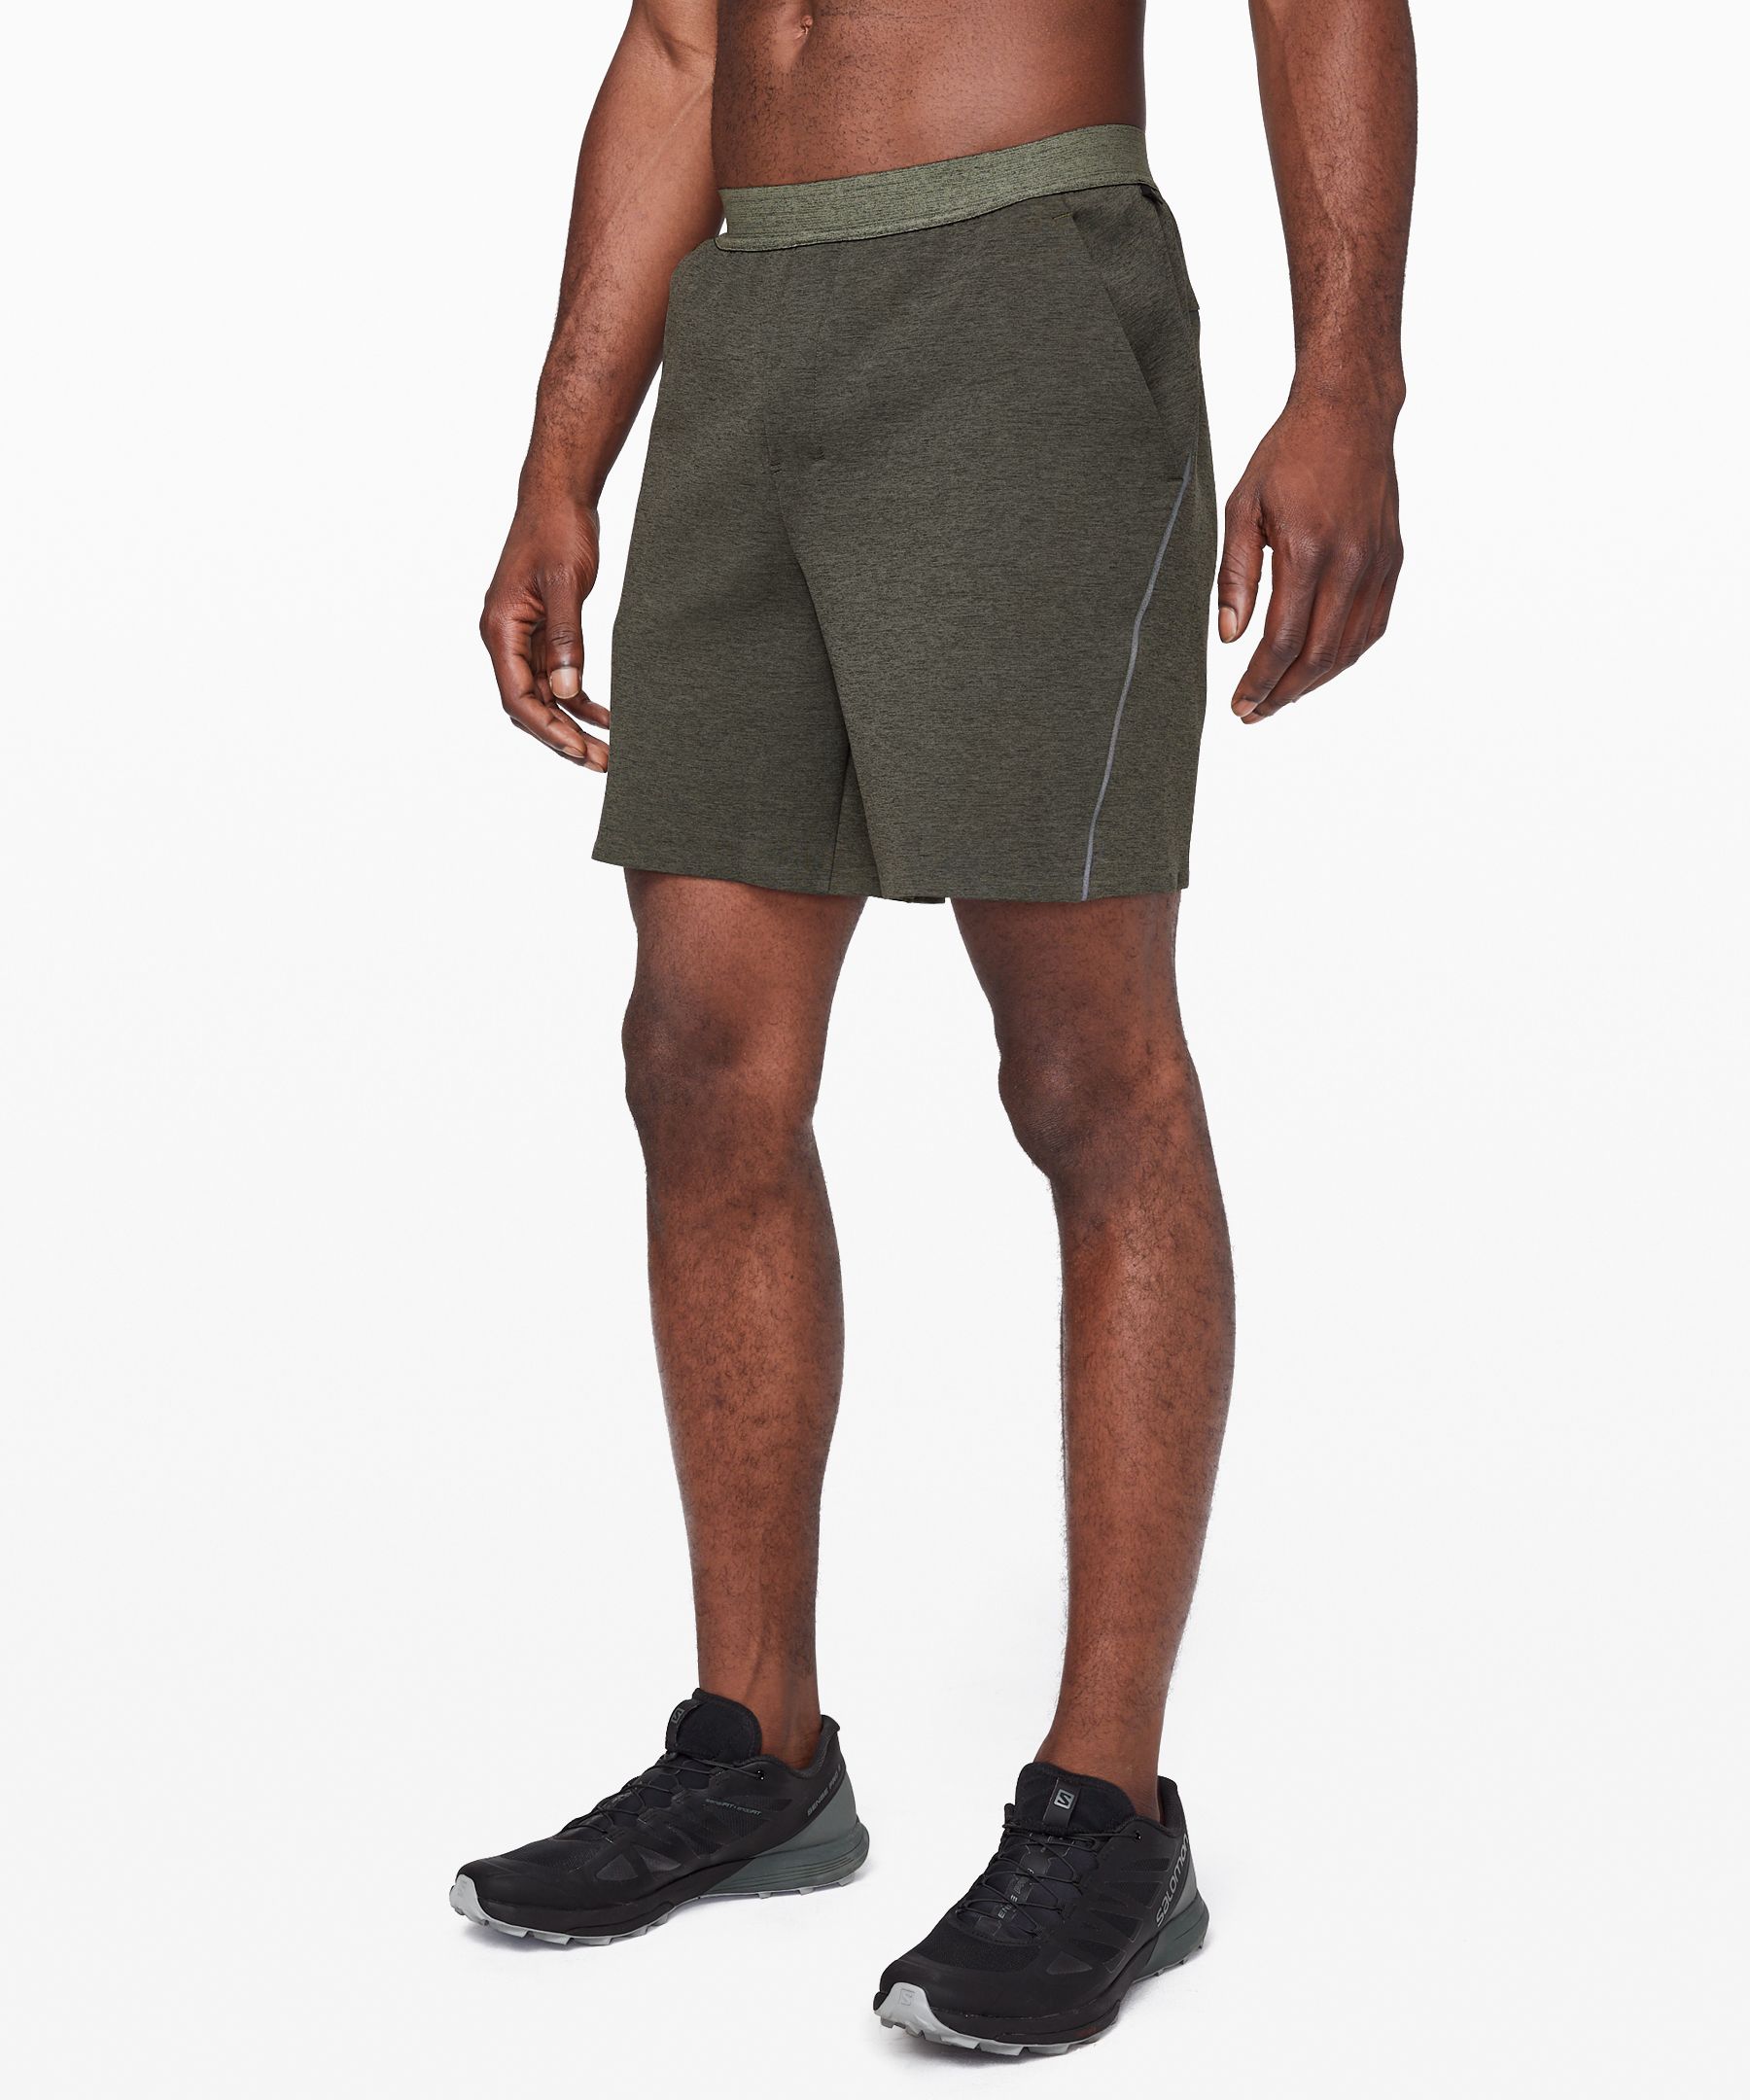 Refract Short *lululemon lab | Men's Shorts | lululemon athletica